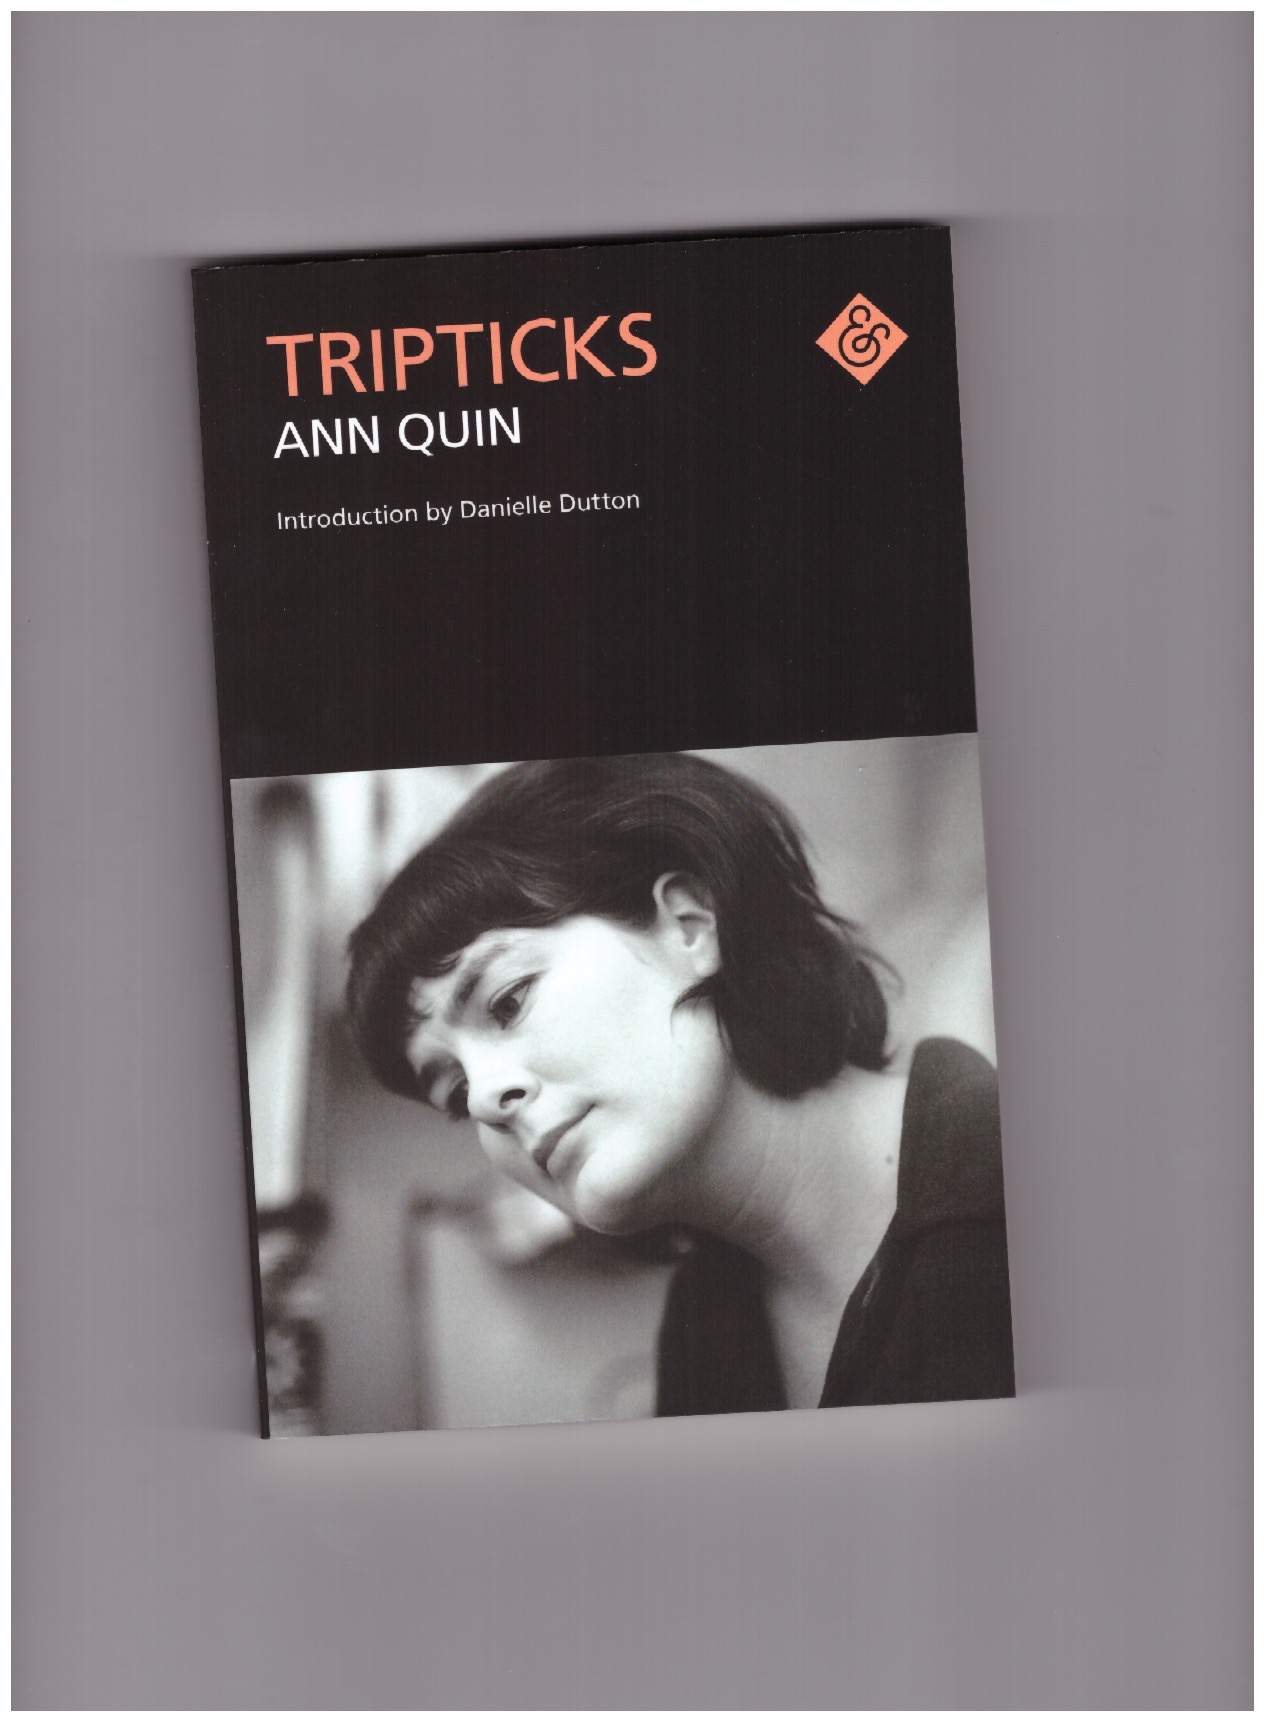 QUIN, Ann - Tripticks